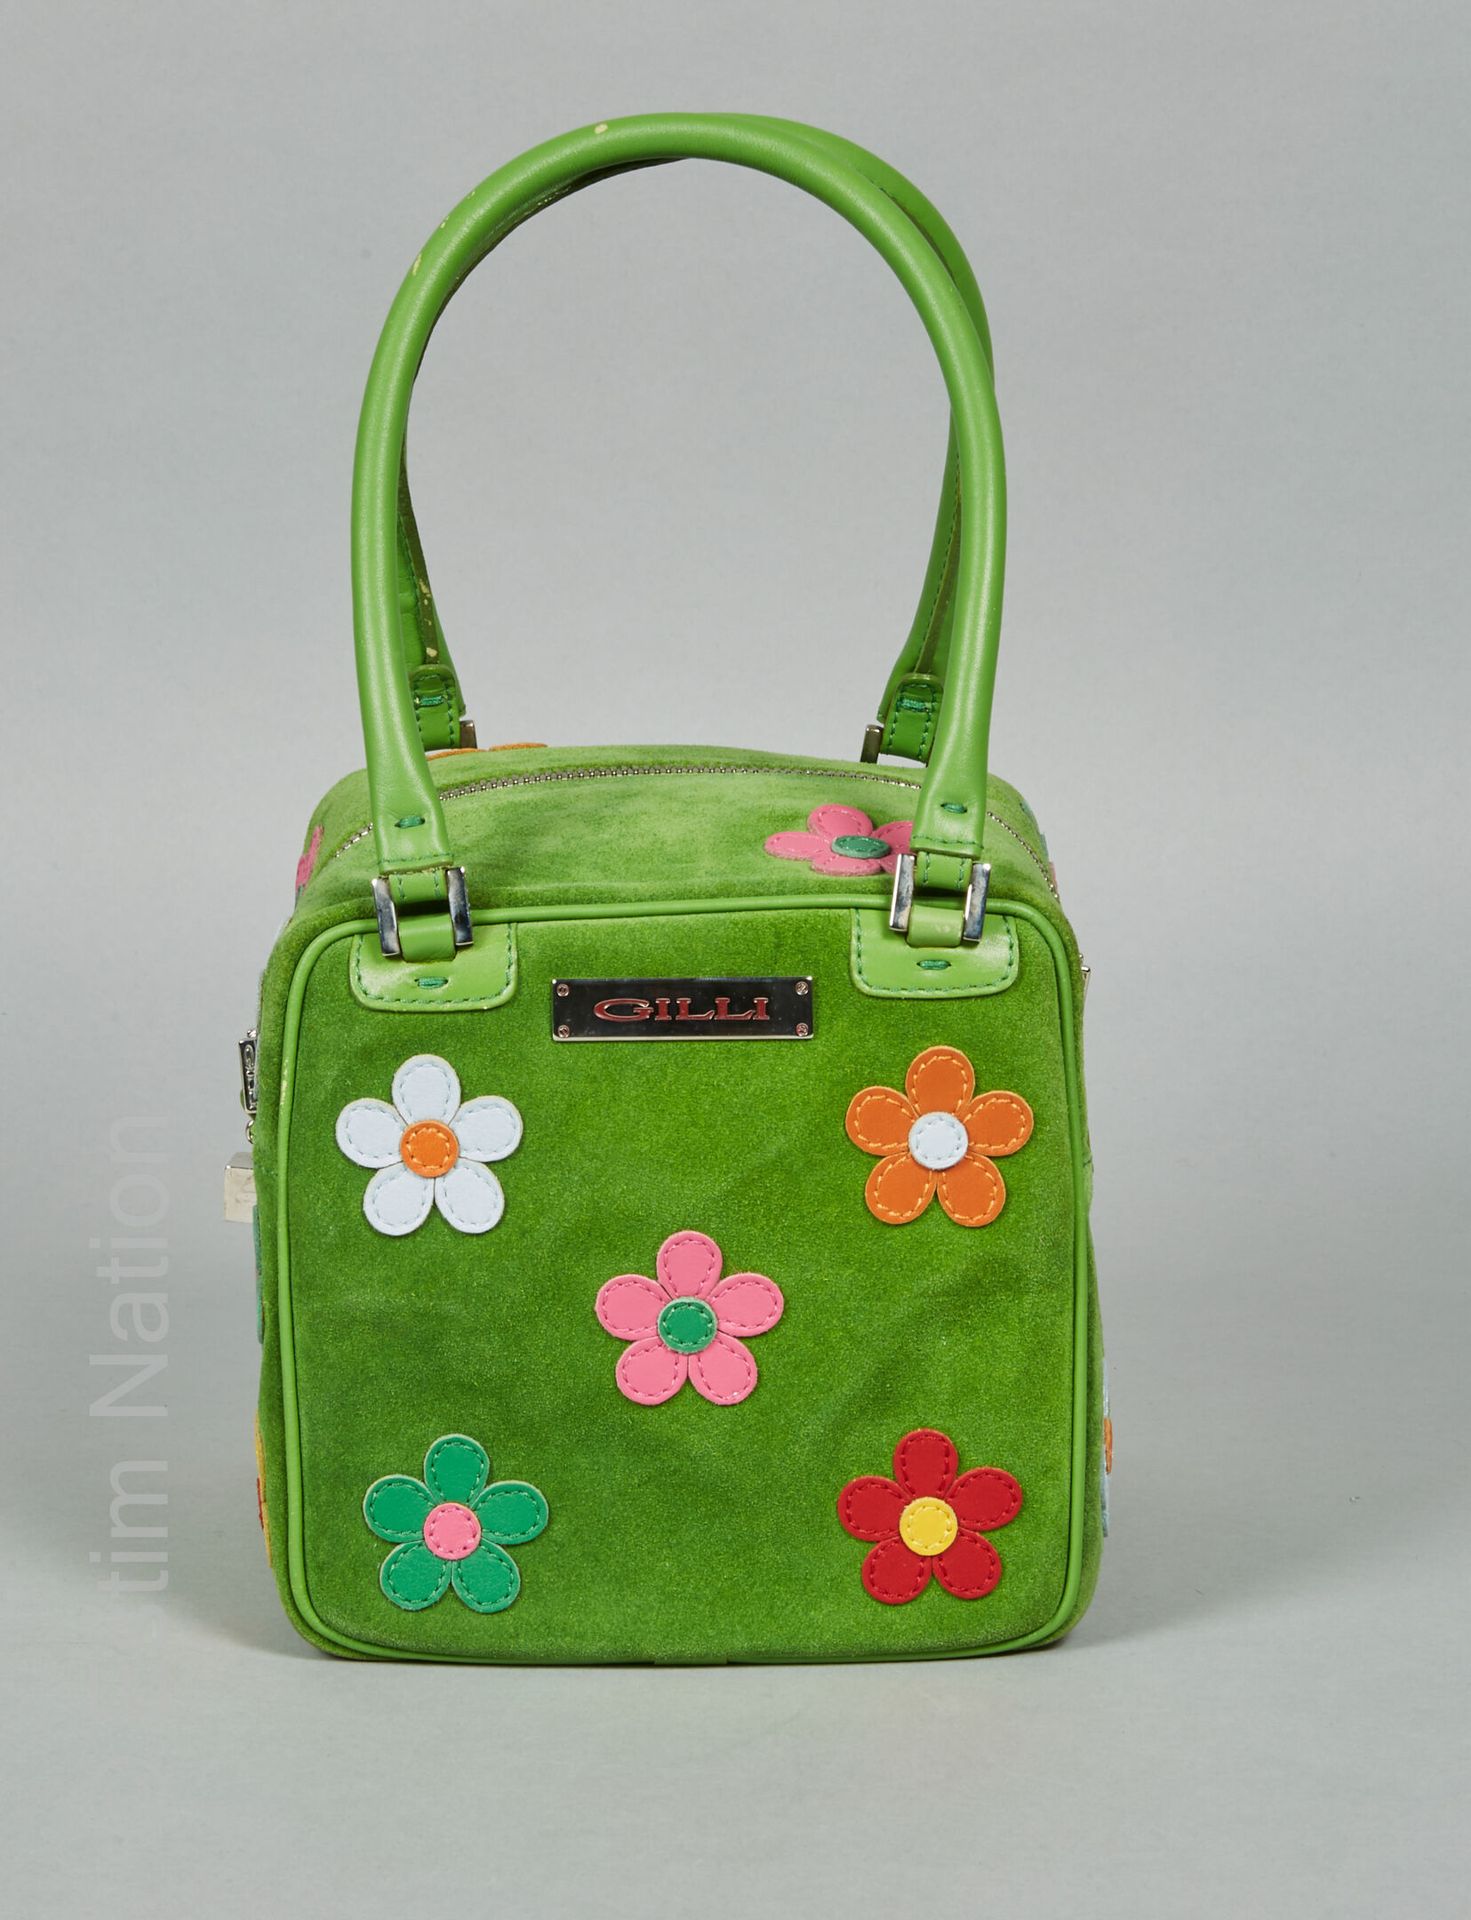 Gilli SAC CUBE en peau vert rebrodé de fleurs multicolores (légères traces sous &hellip;